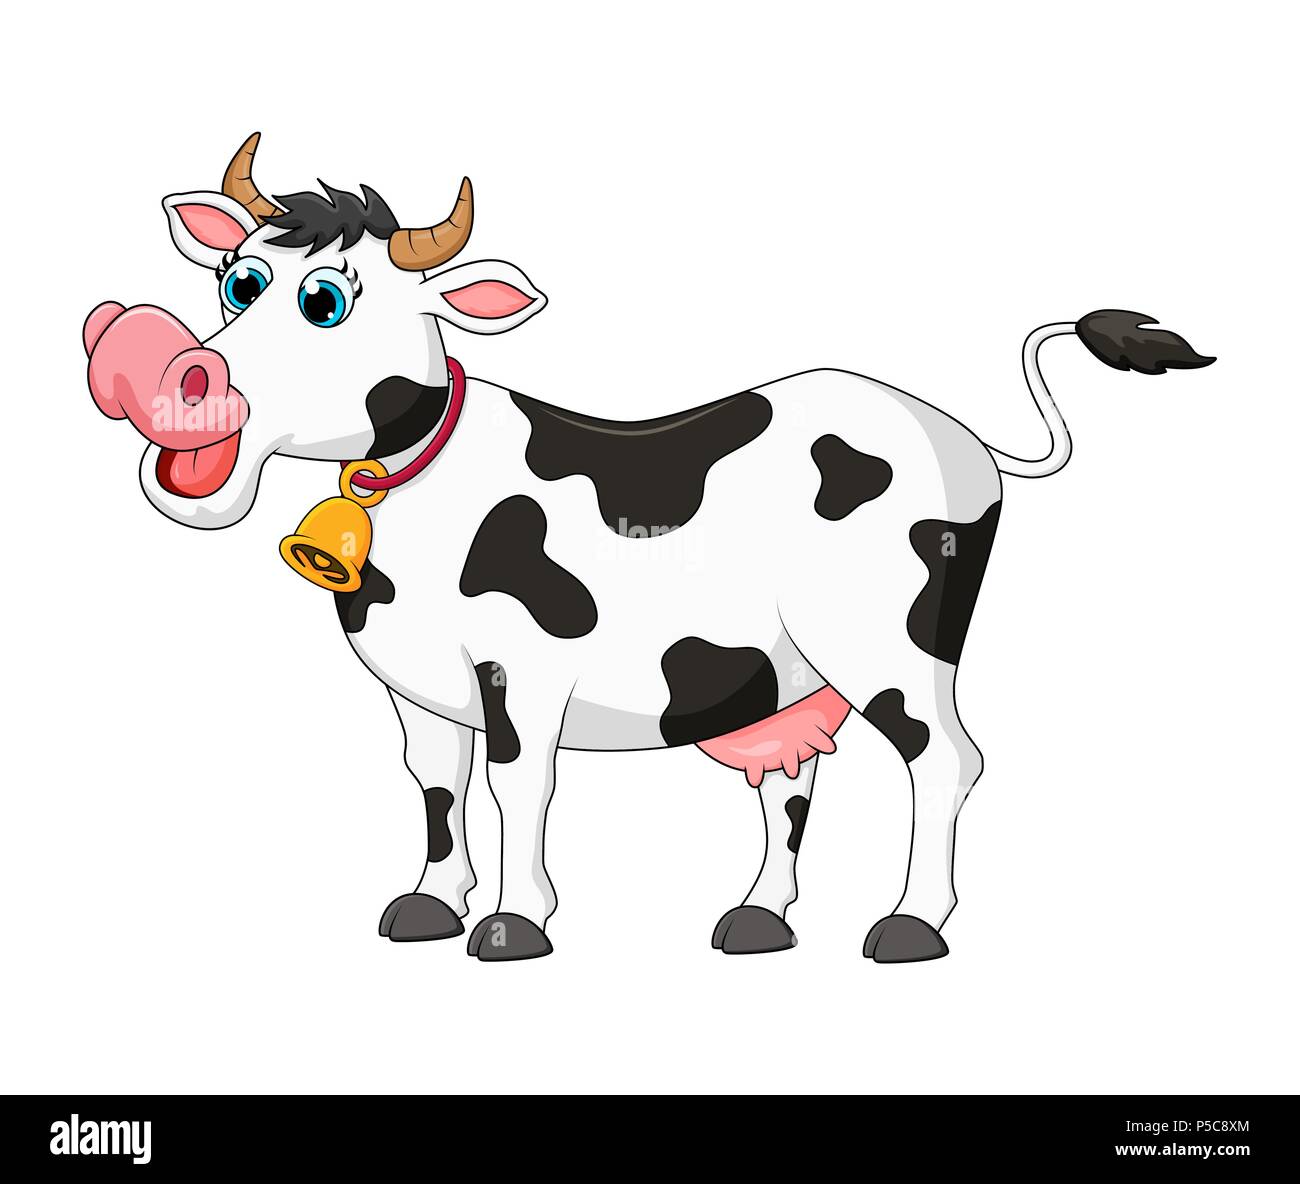 Cartoon weibliche Kuh niedlich Design auf weißem Hintergrund Stock Vektor